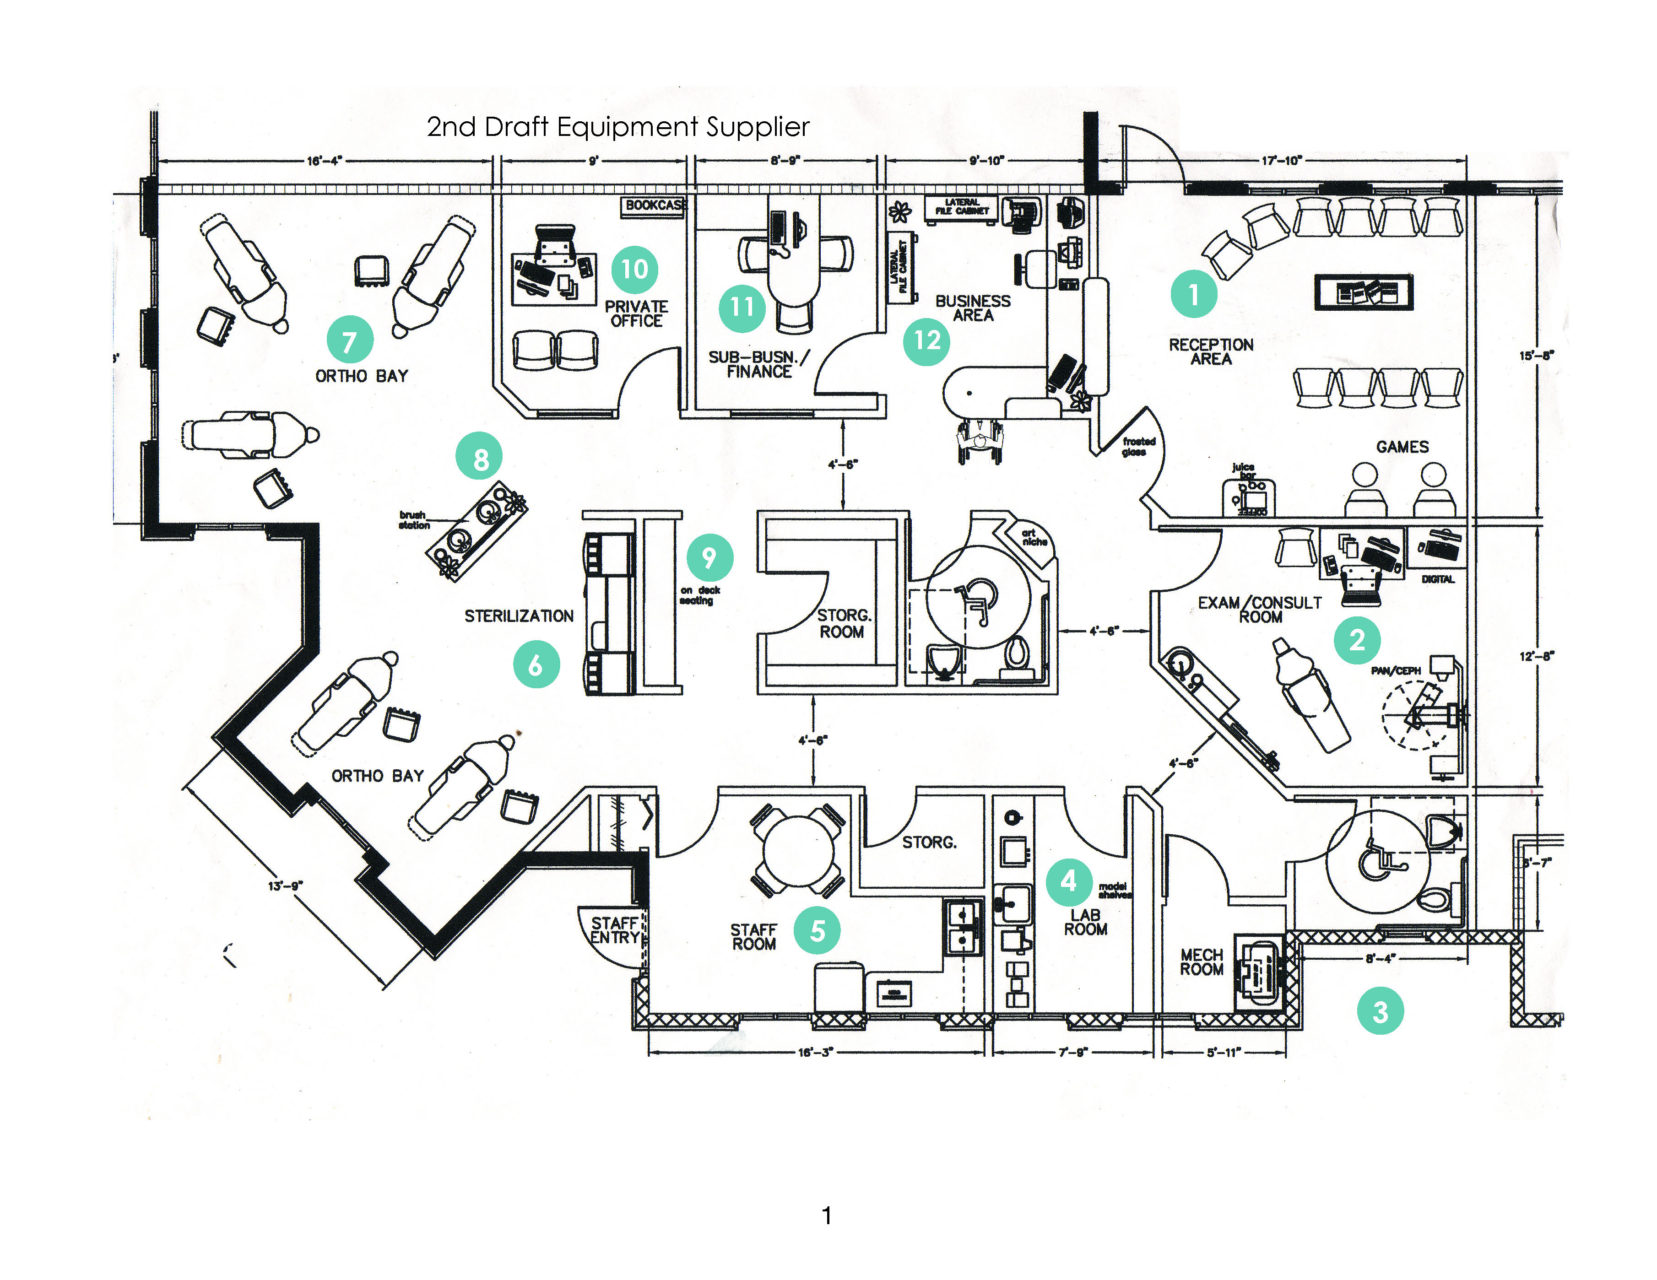 Exhibit-2-Equipment-Supplier-Floor-Plan-2nd-draft_Moser  Green Curve Studio